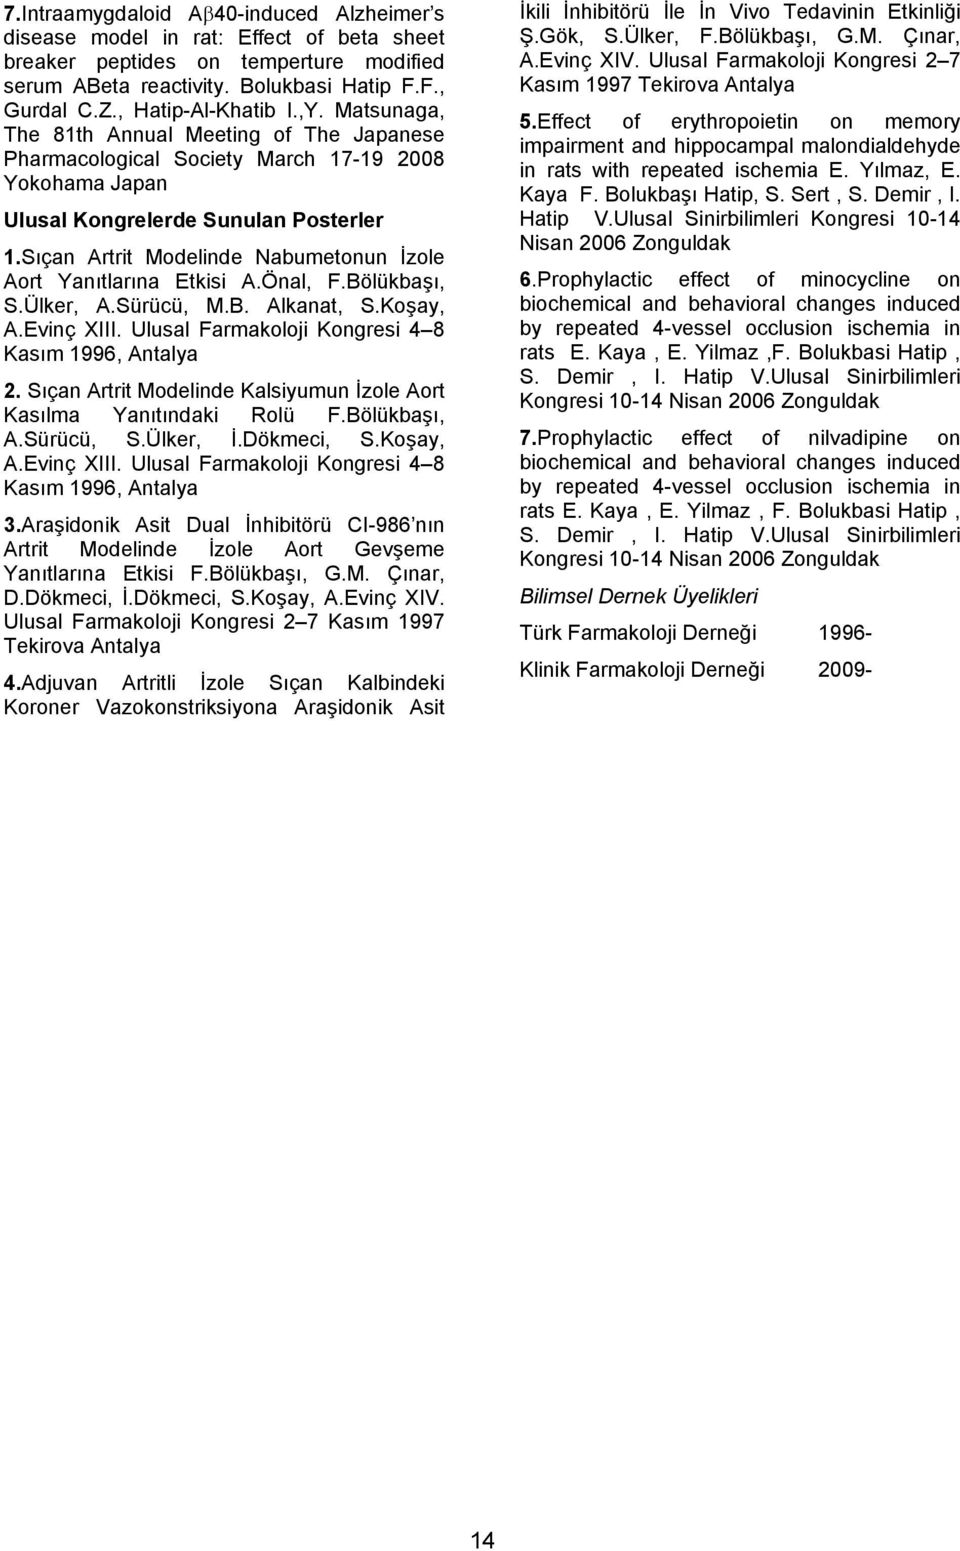 Sıçan Artrit Modelinde Nabumetonun İzole Aort Yanıtlarına Etkisi A.Önal, F.Bölükbaşı, S.Ülker, A.Sürücü, M.B. Alkanat, S.Koşay, A.Evinç XIII. Ulusal Farmakoloji Kongresi 4 8 Kasım 1996, Antalya 2.